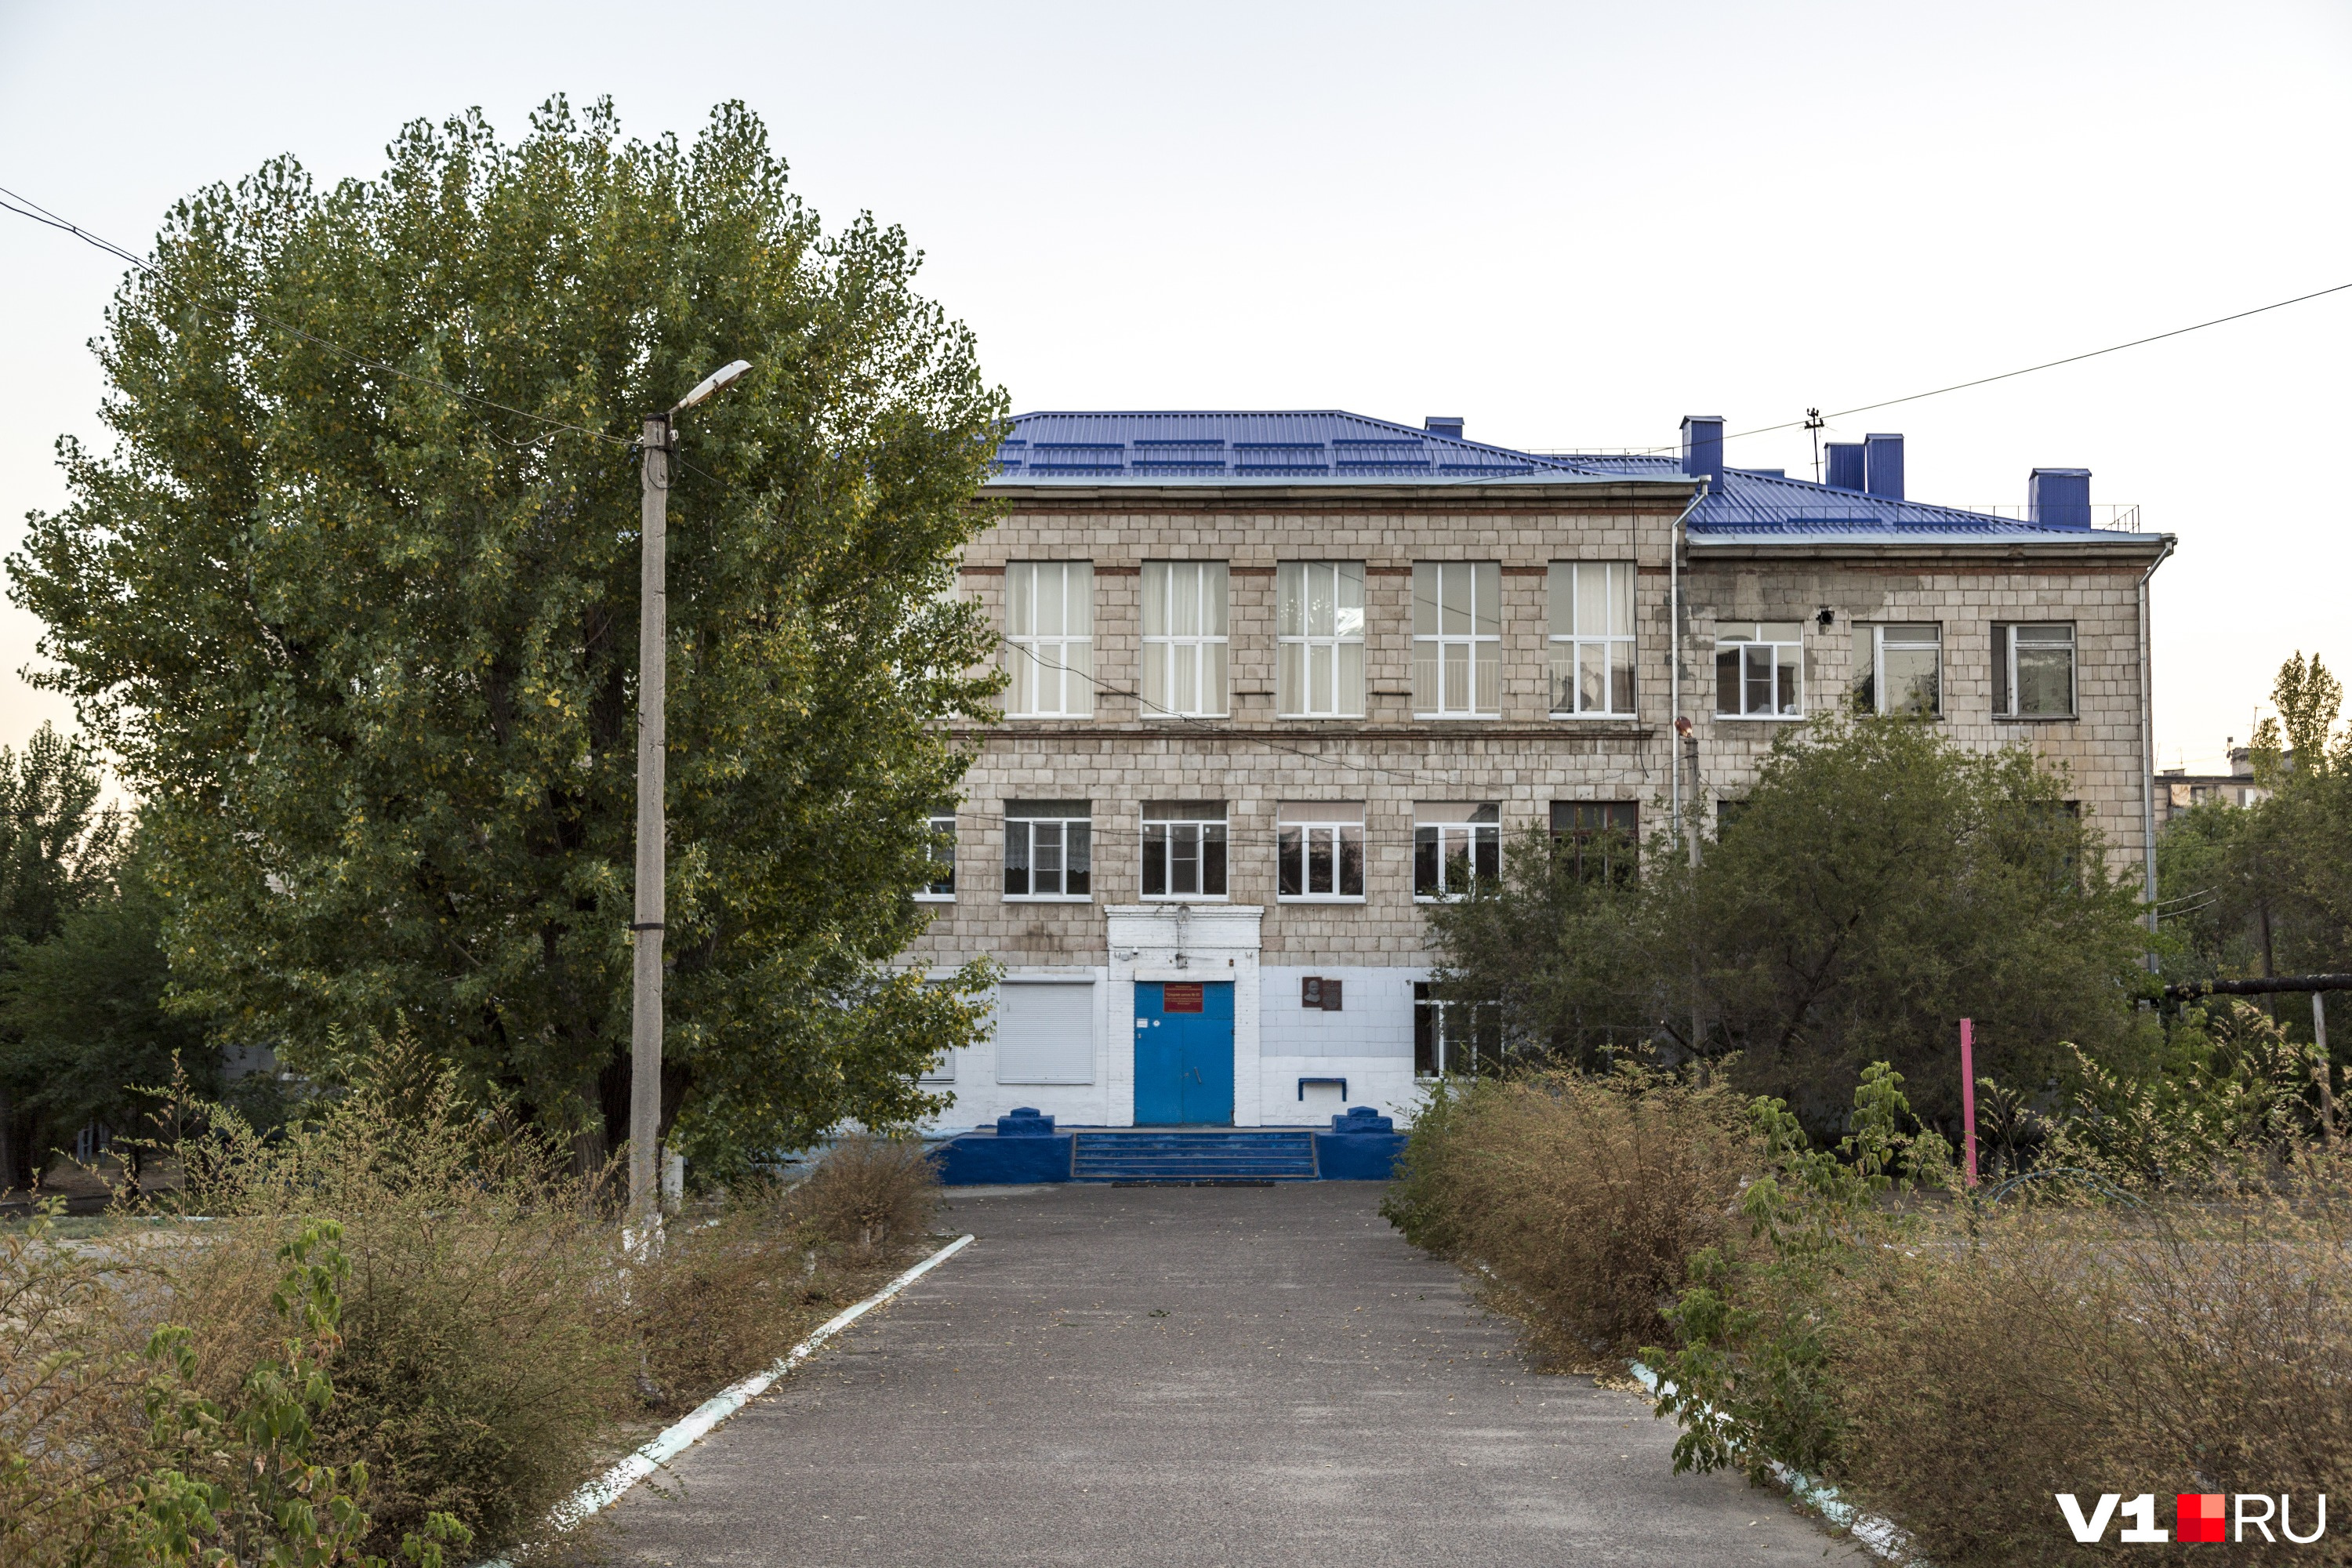 Геннадий Лячин учился в этой волгоградской школе